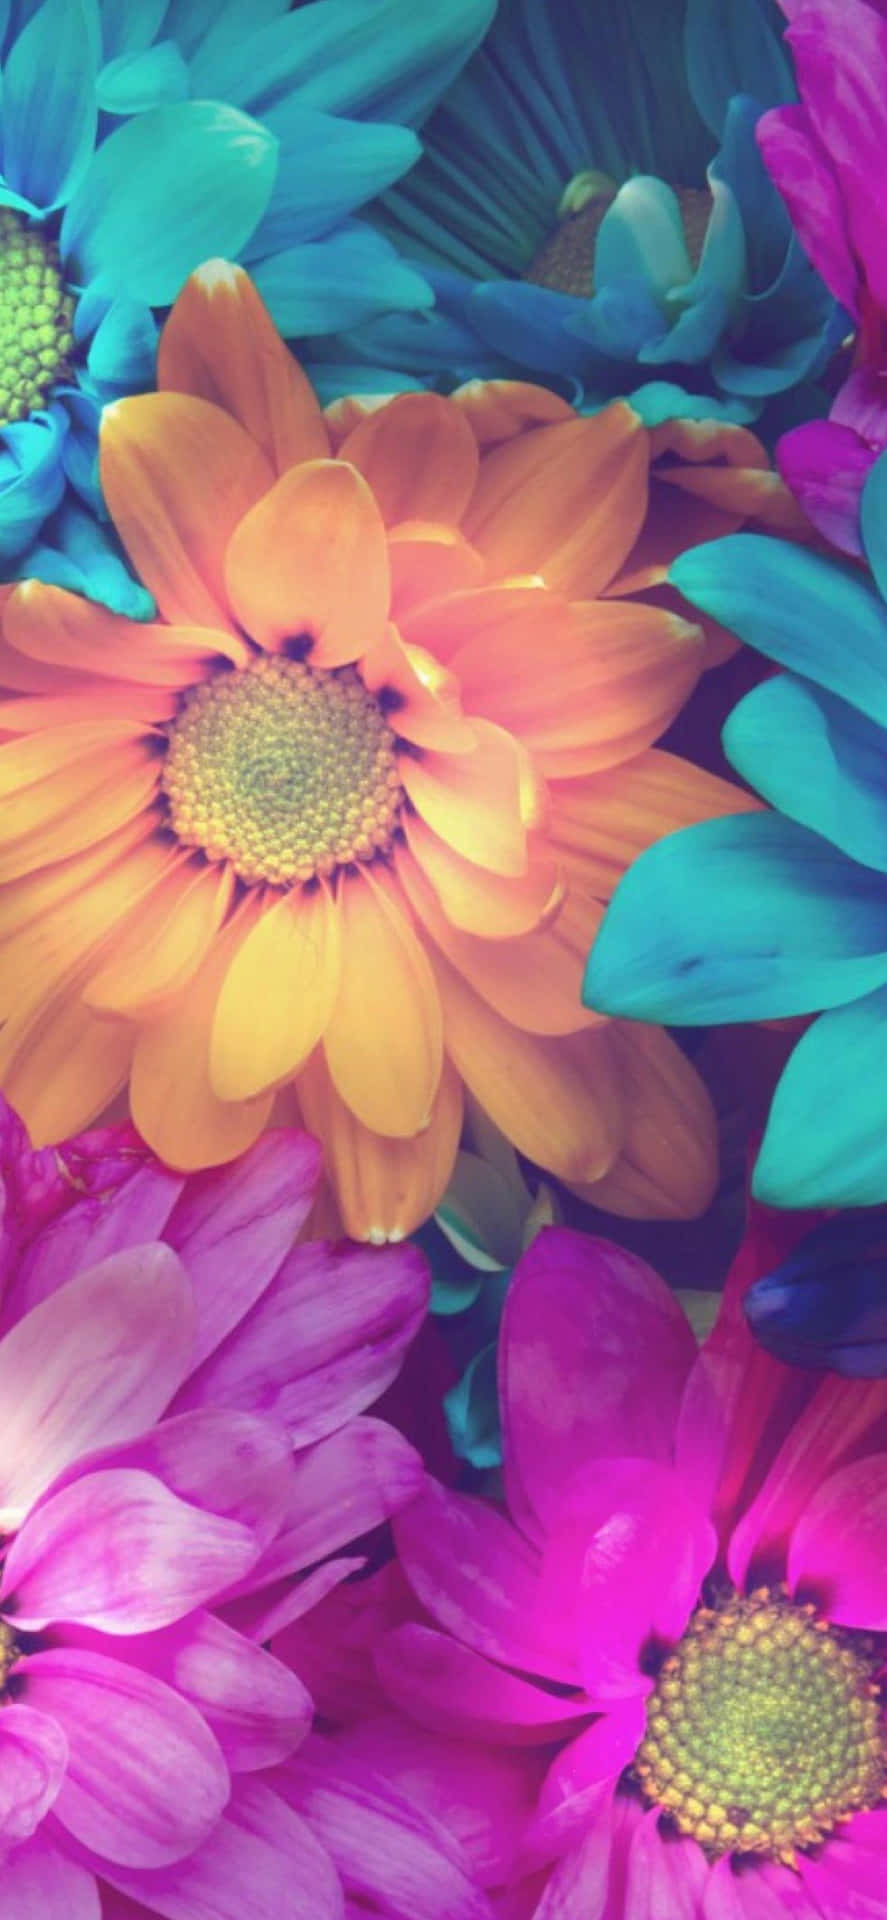 Verleihensie Ihrem Telefon Mit Diesem Farbenfrohen Blumen-iphone-hintergrund Einen Hauch Von Schönheit. Wallpaper